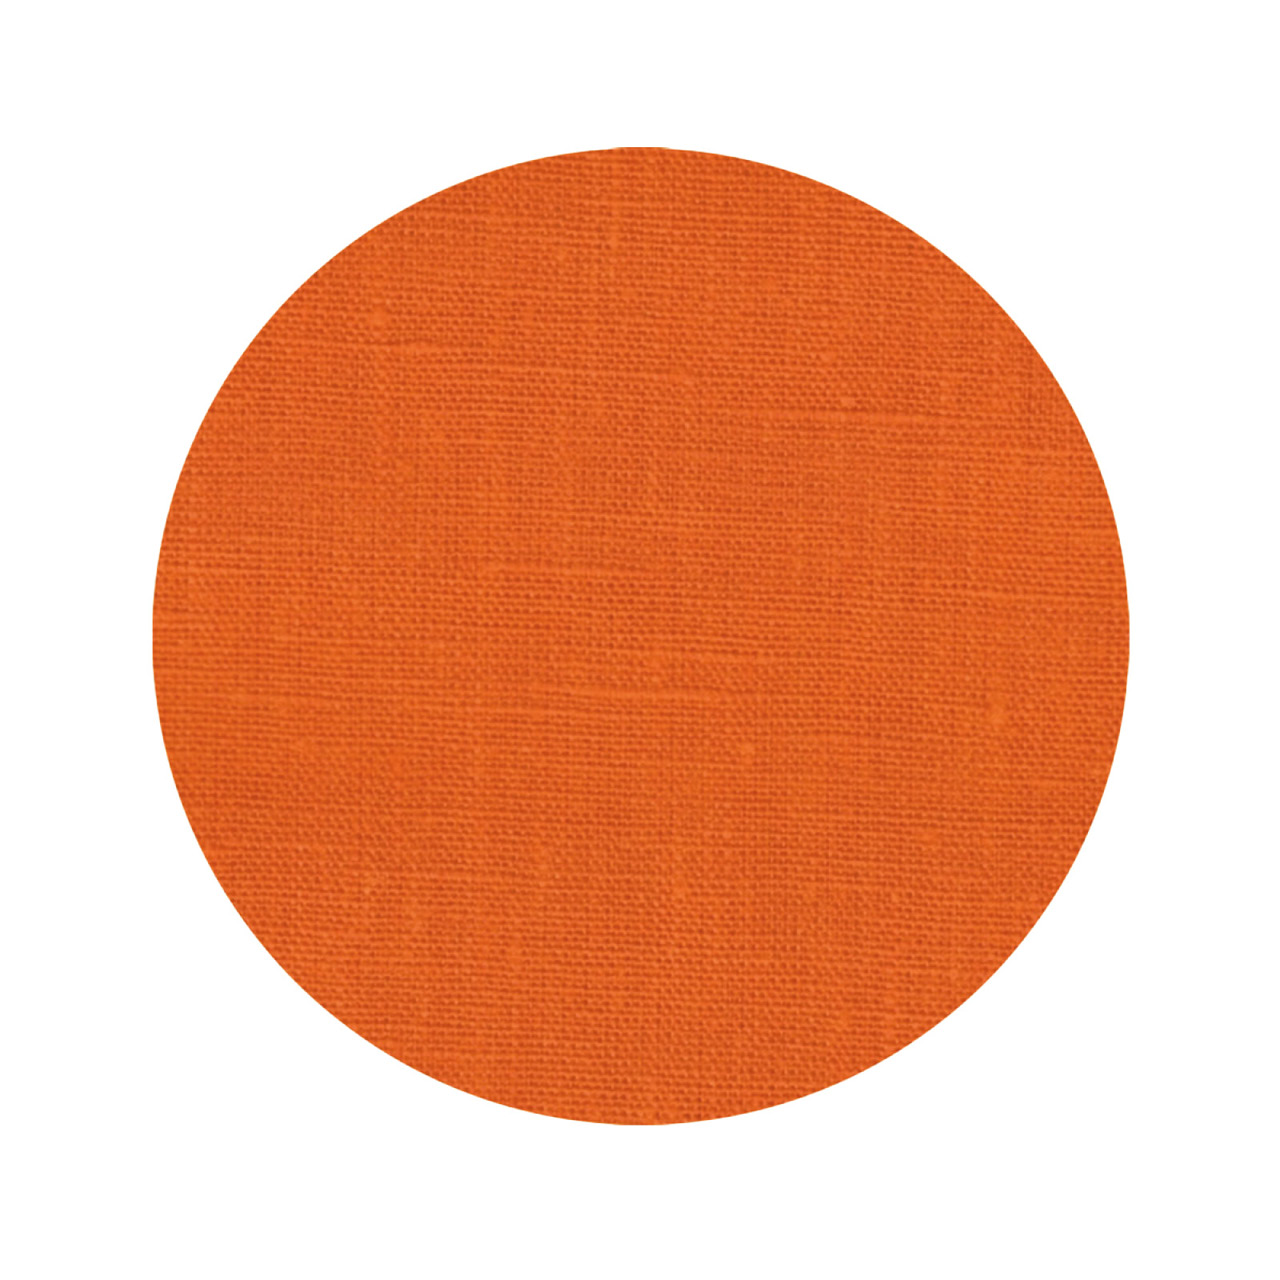 Glasunderlägg 10cm orange